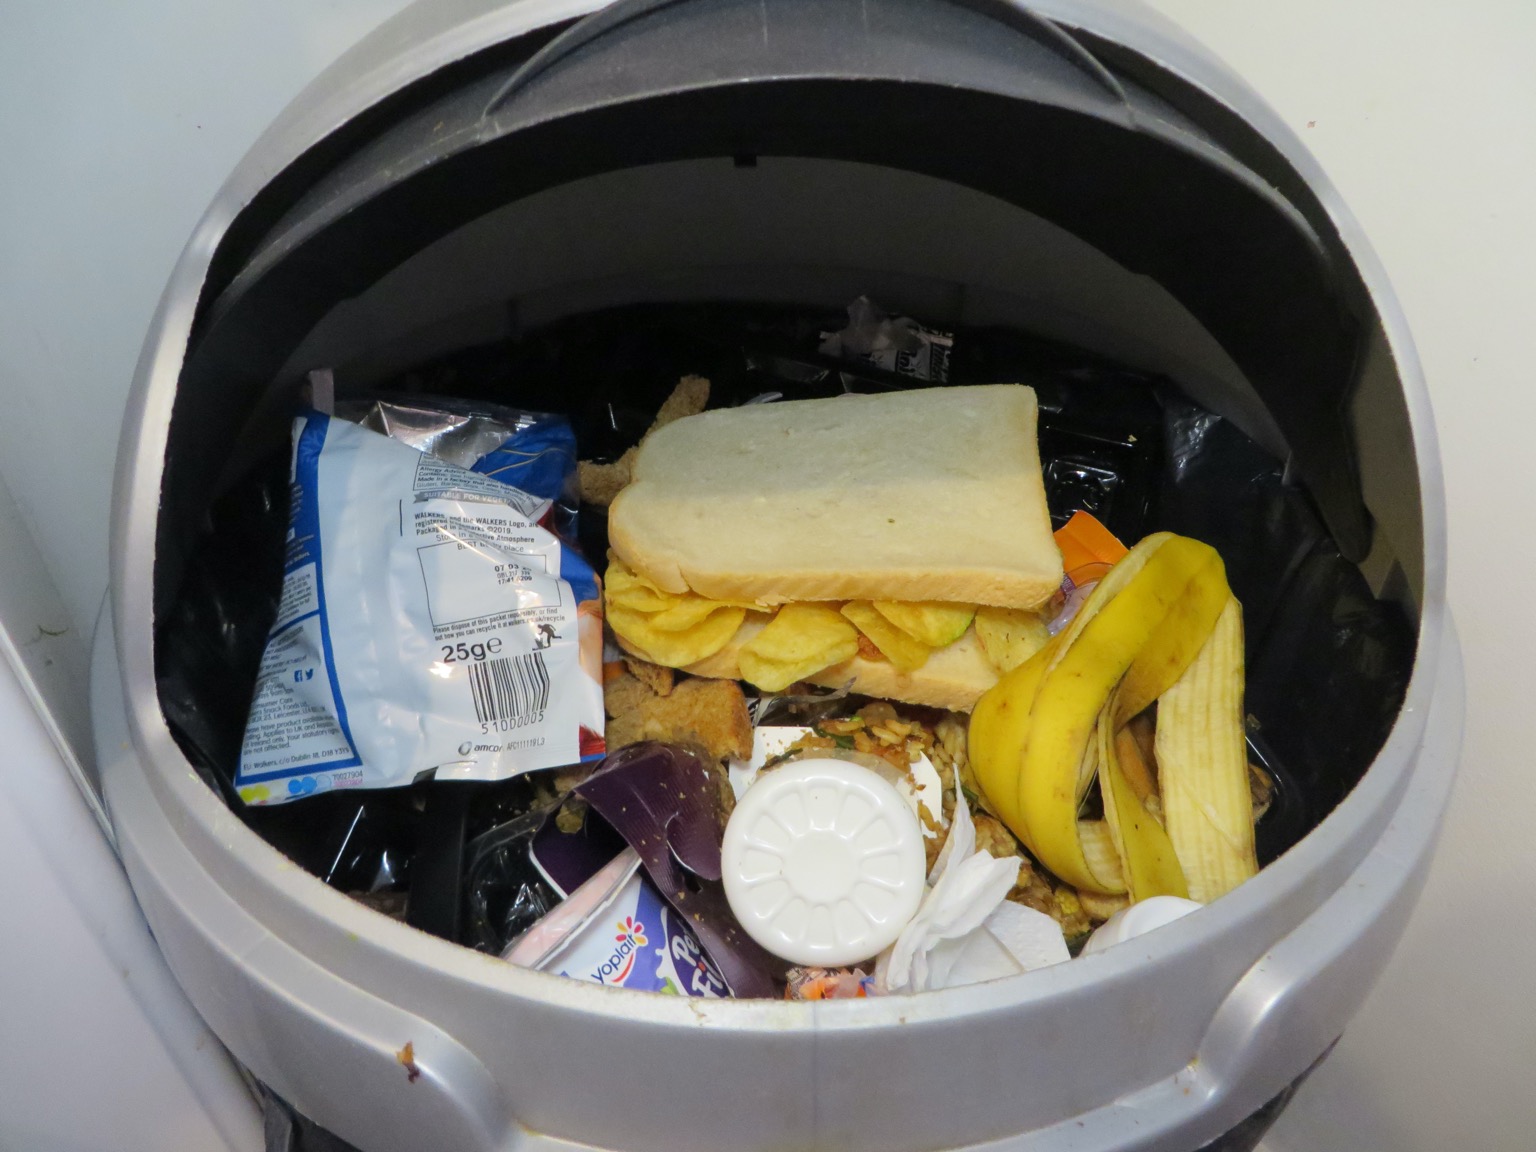 White crisp sandwich in a kitchen bin